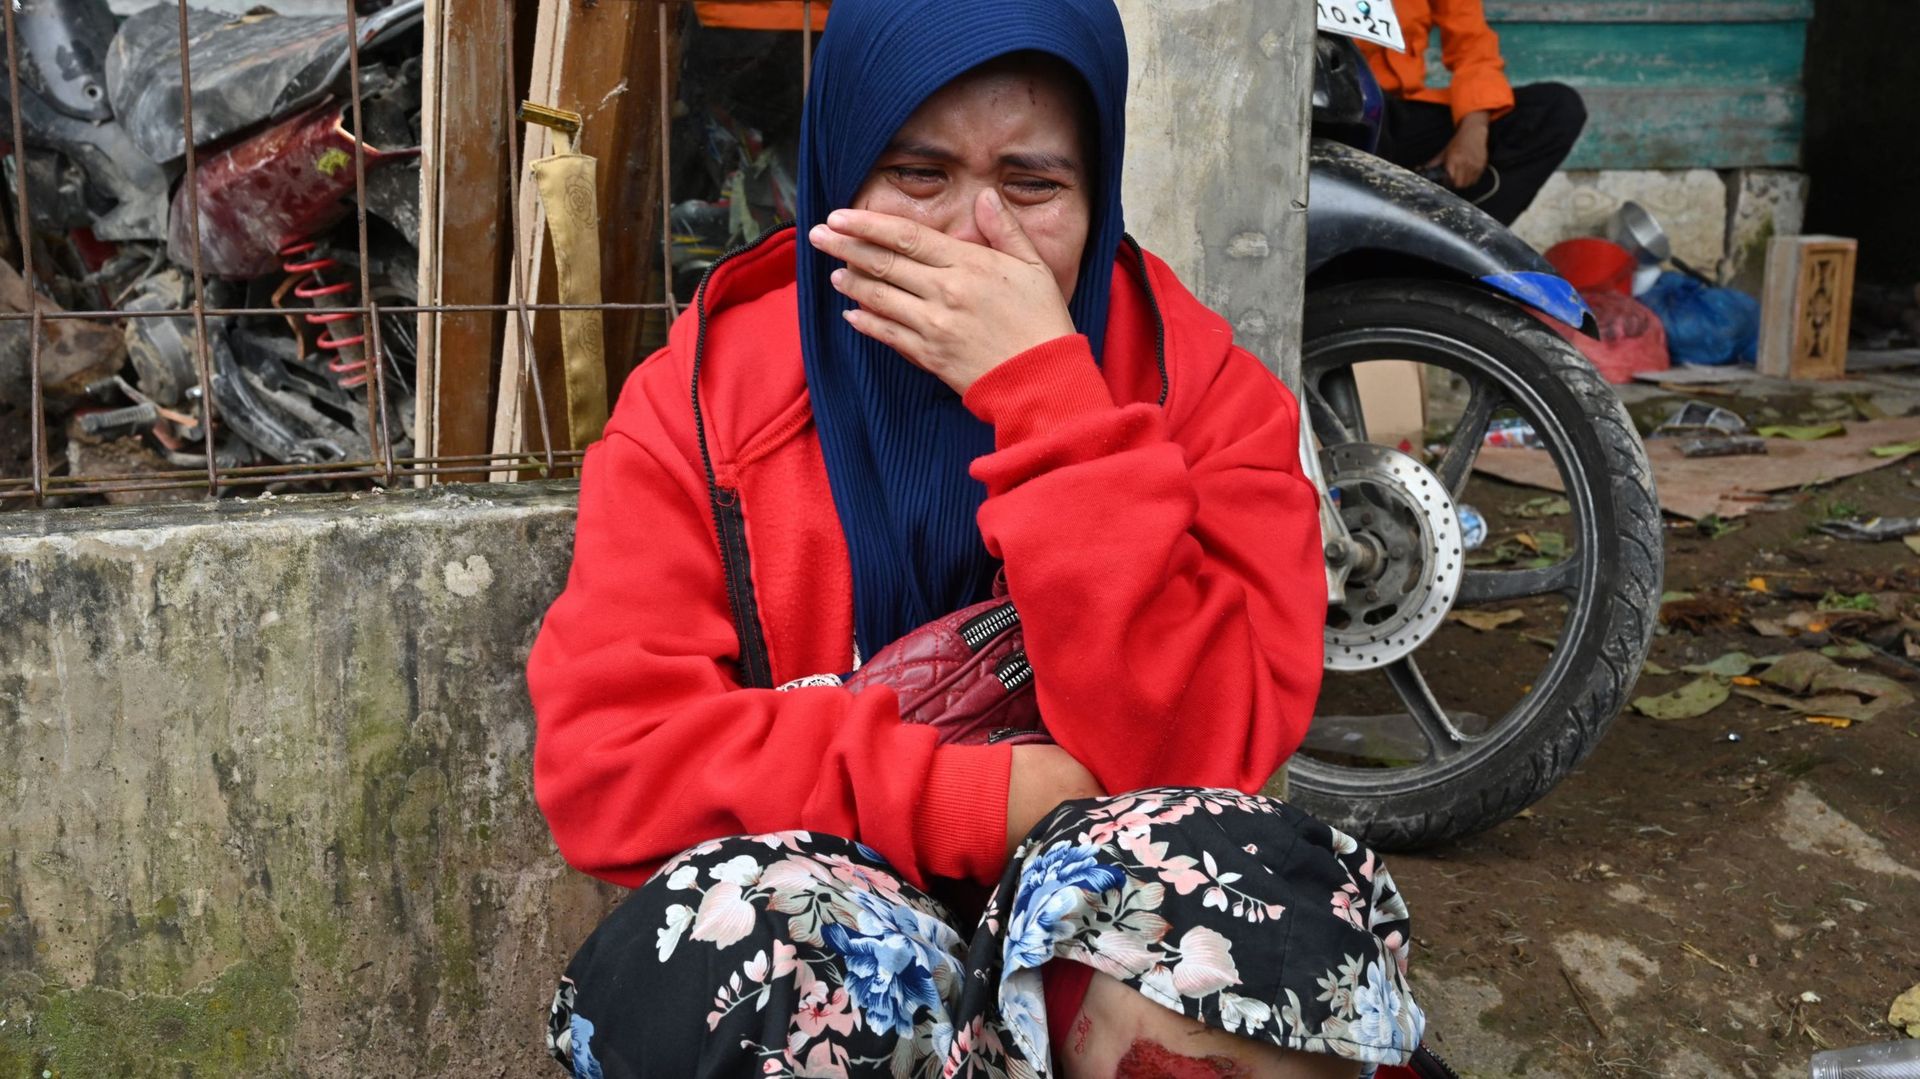 Imas Masfahitah réagit alors que des secouristes s’efforcent de retrouver son enfant disparu, que l’on croit prisonnier des décombres d’une maison effondrée à Cugenang, à Cianjur, dans l’ouest de Java, le 24 novembre 2022, à la suite du séisme de magnitud